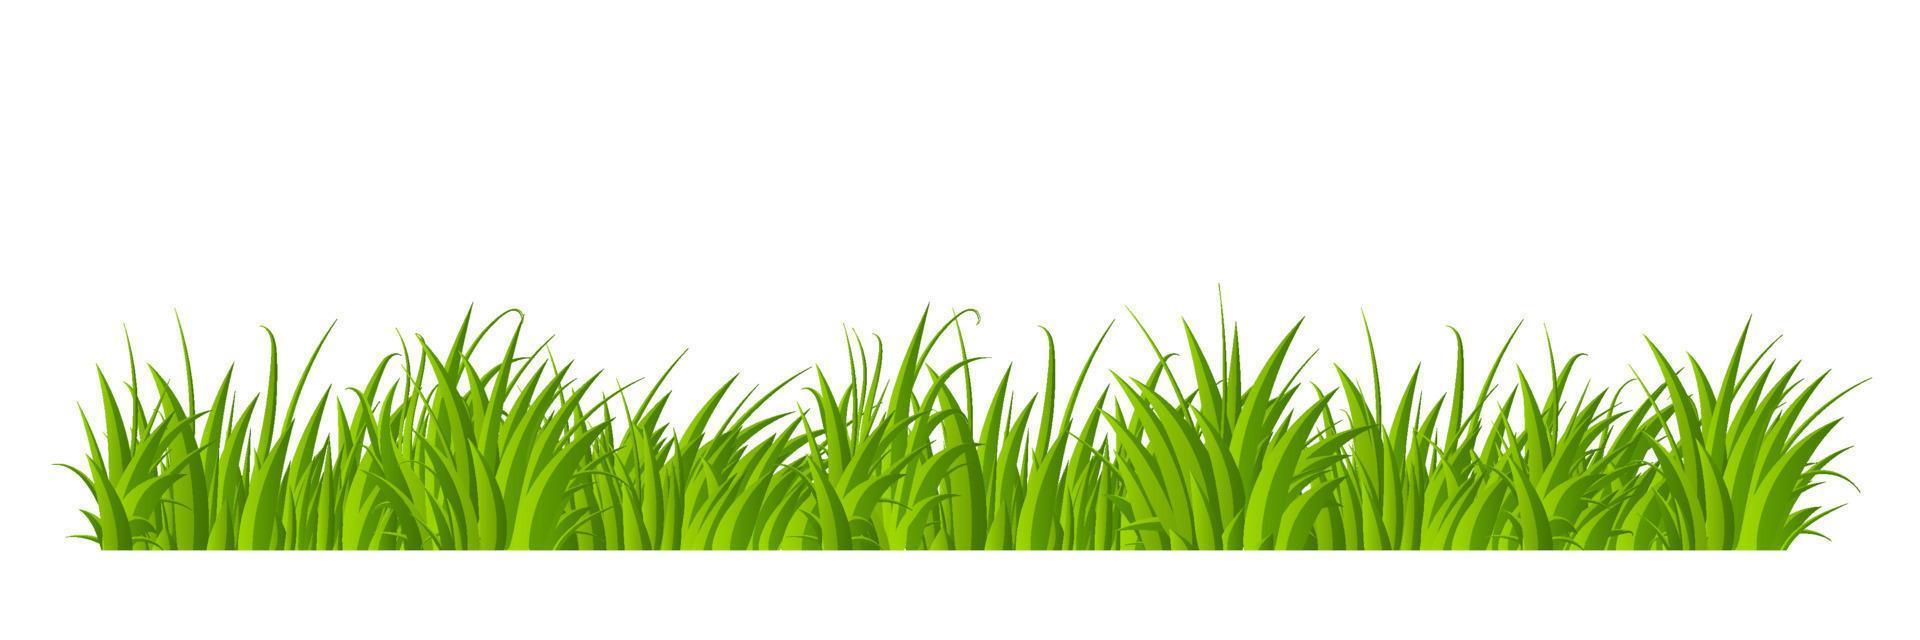 conception de style plat de bordure d'herbe verte. dessin animé été herbe verte nature paysage champ. illustration vectorielle vecteur